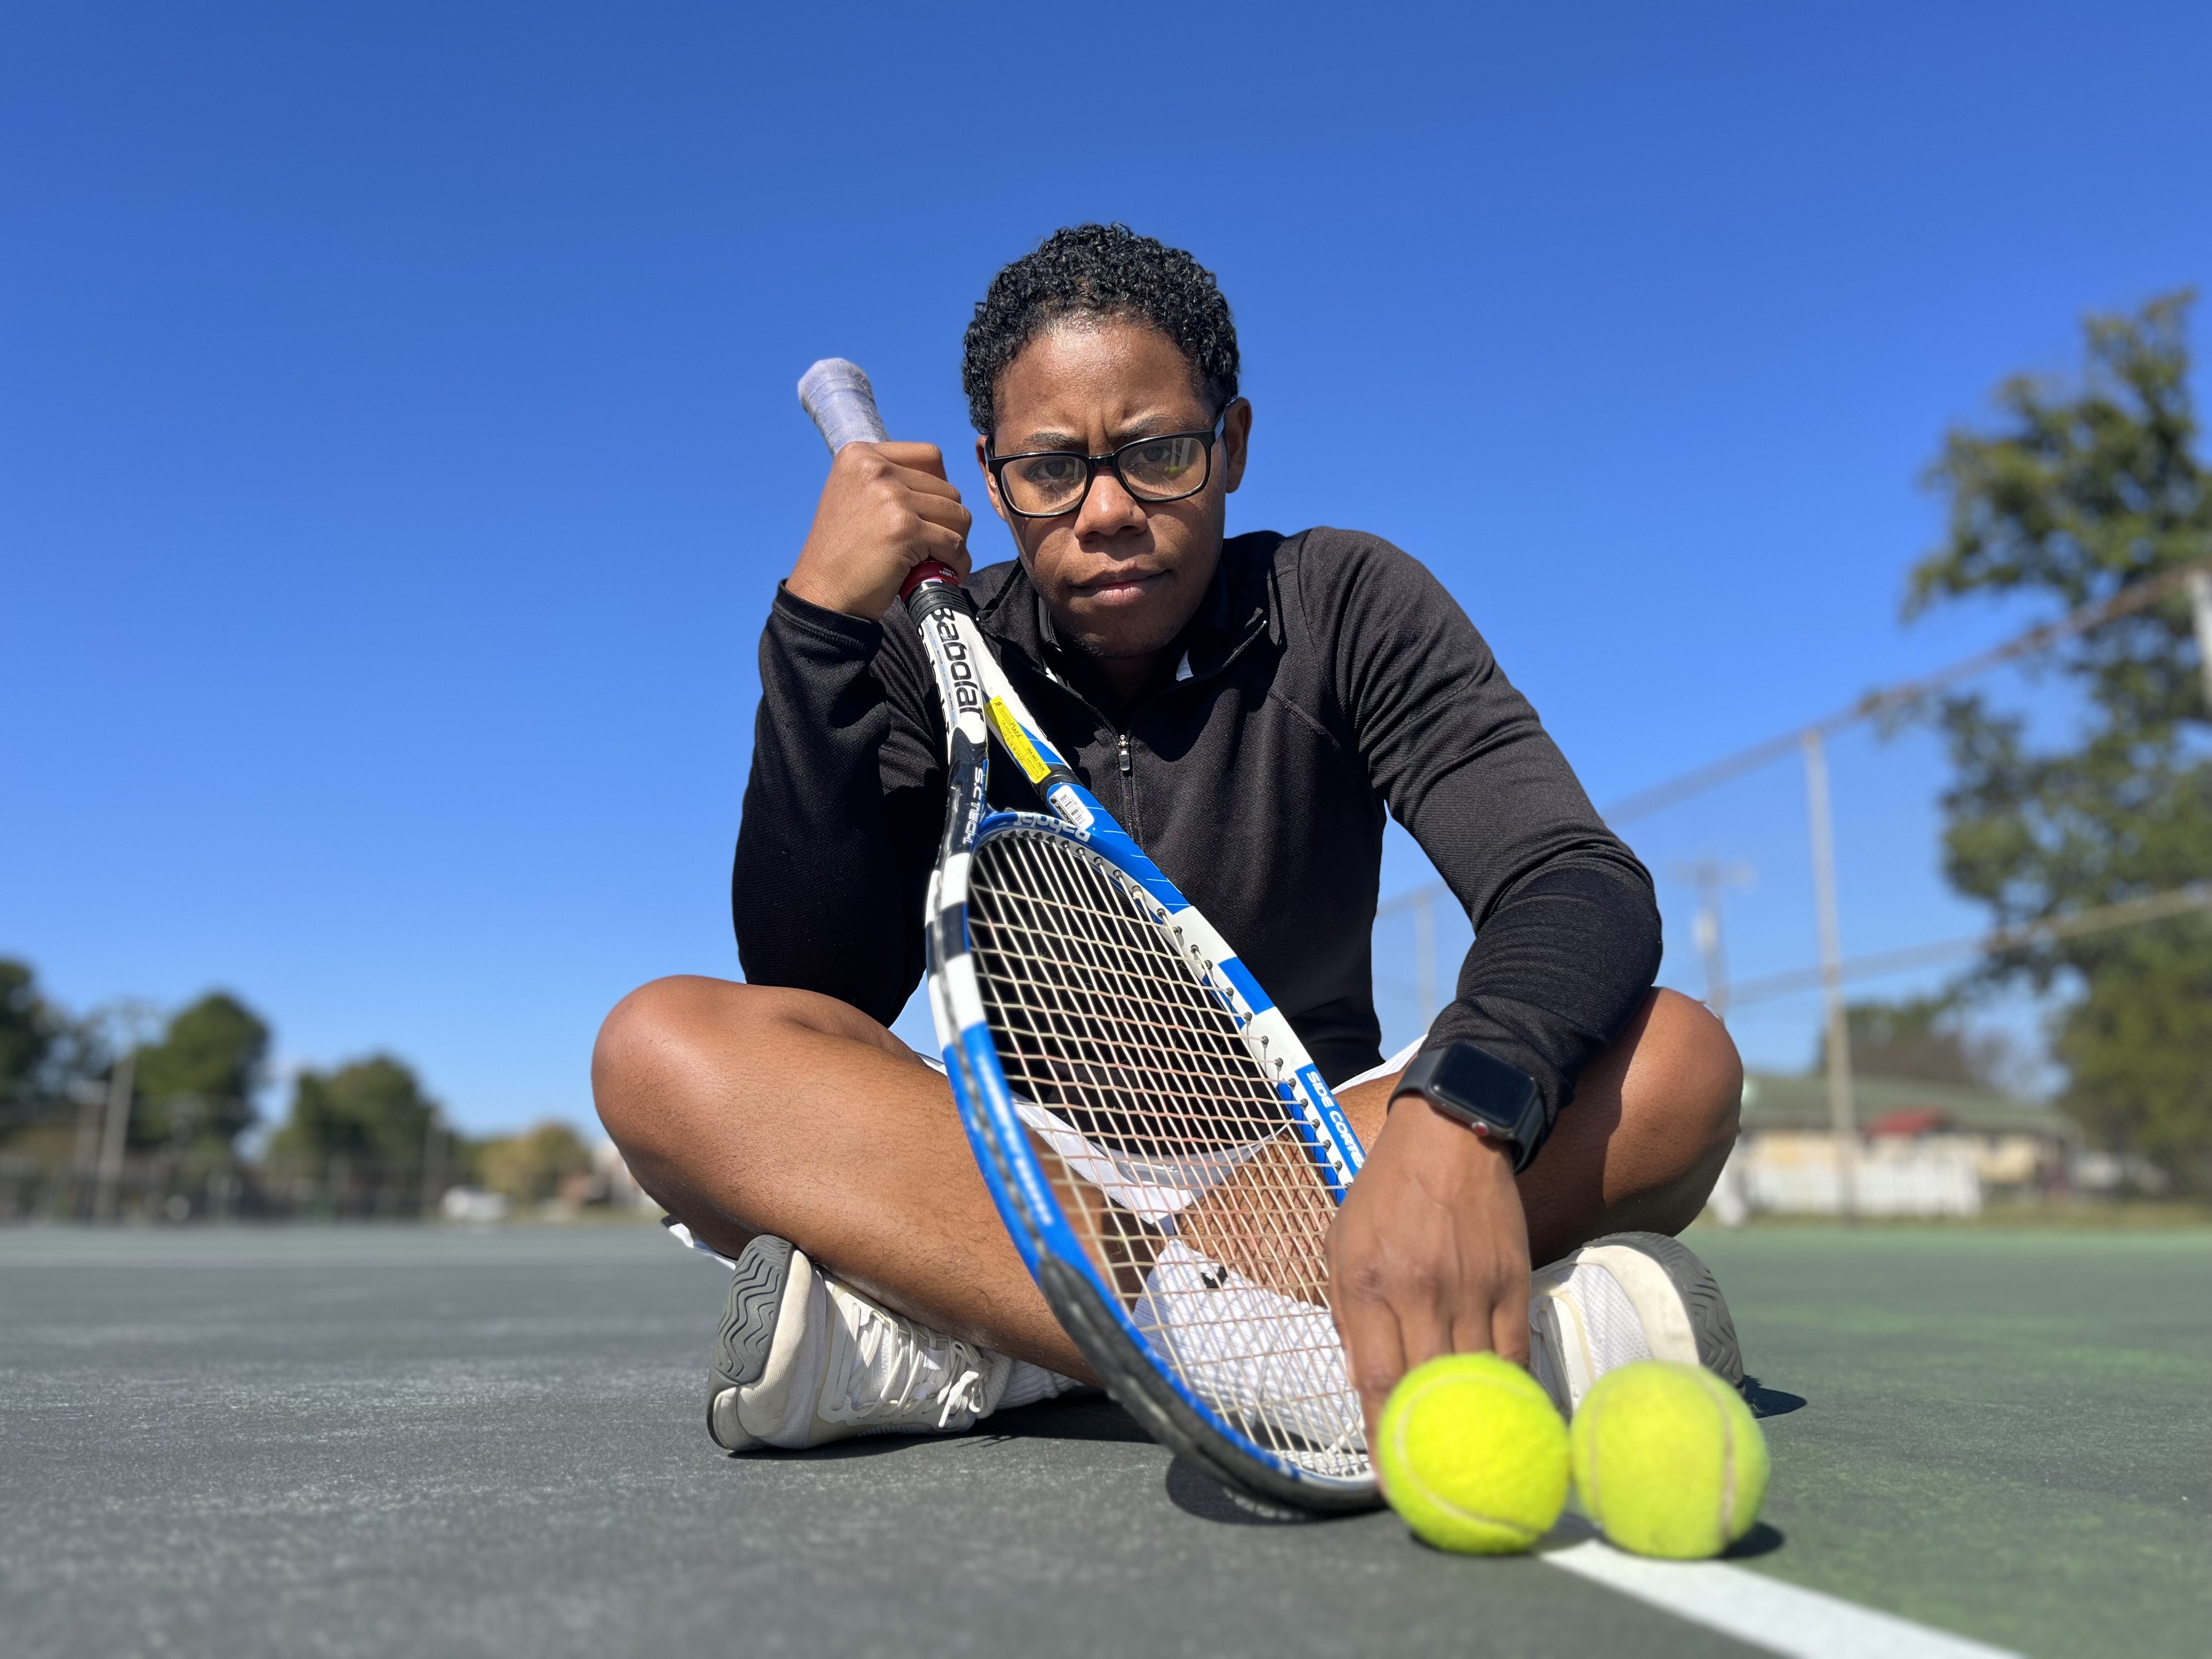 Deana W. teaches tennis lessons in Greensboro, NC